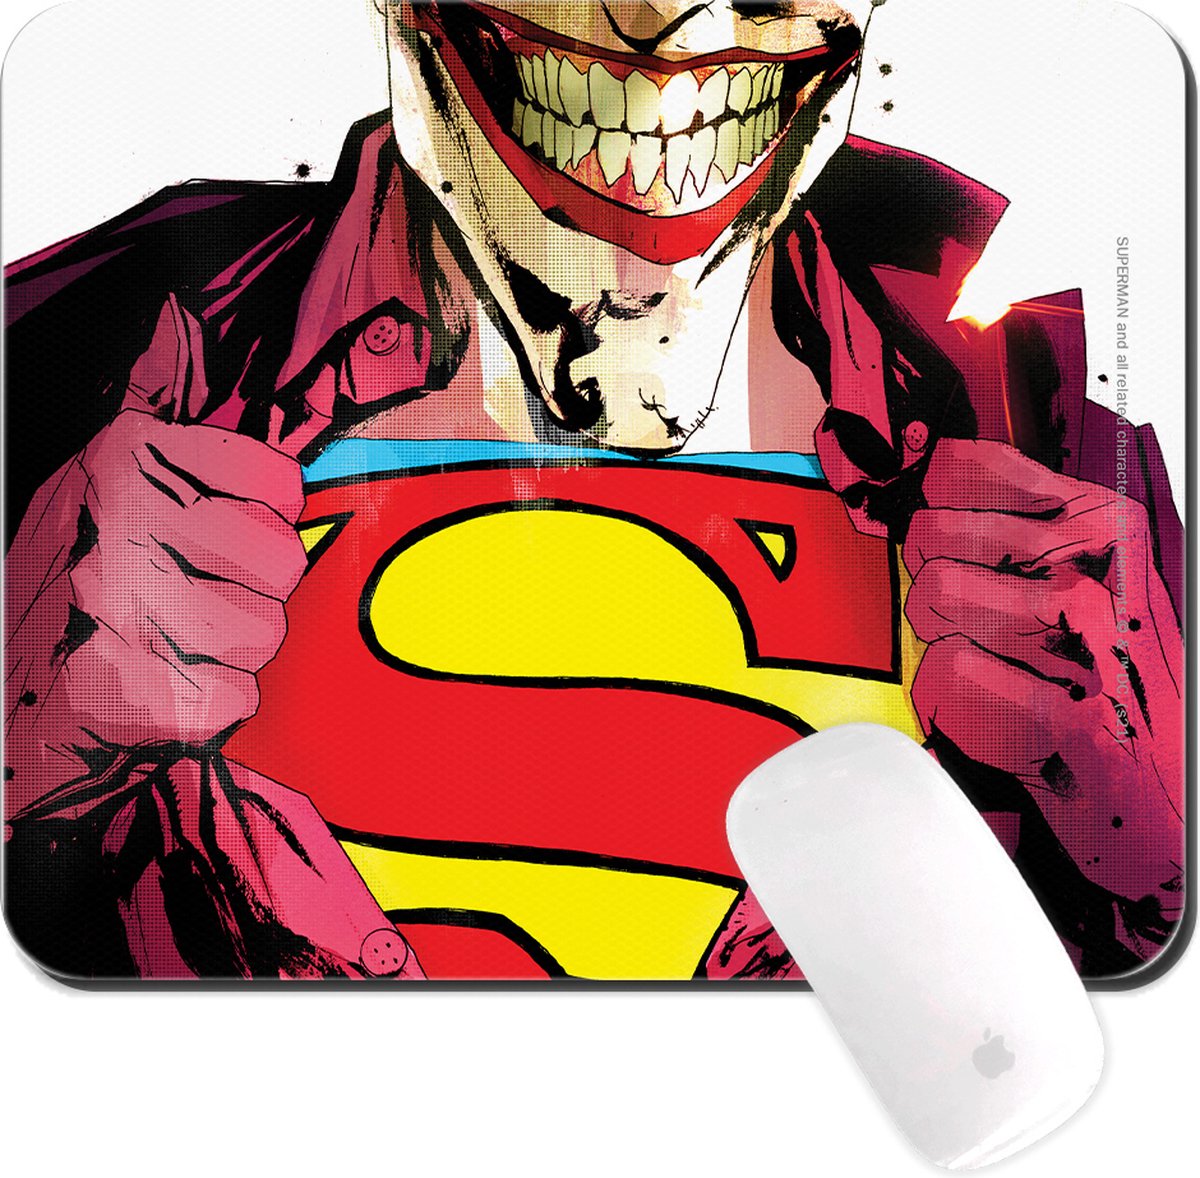 Superman The Joker - Muismat 22x18cm 3mm dik